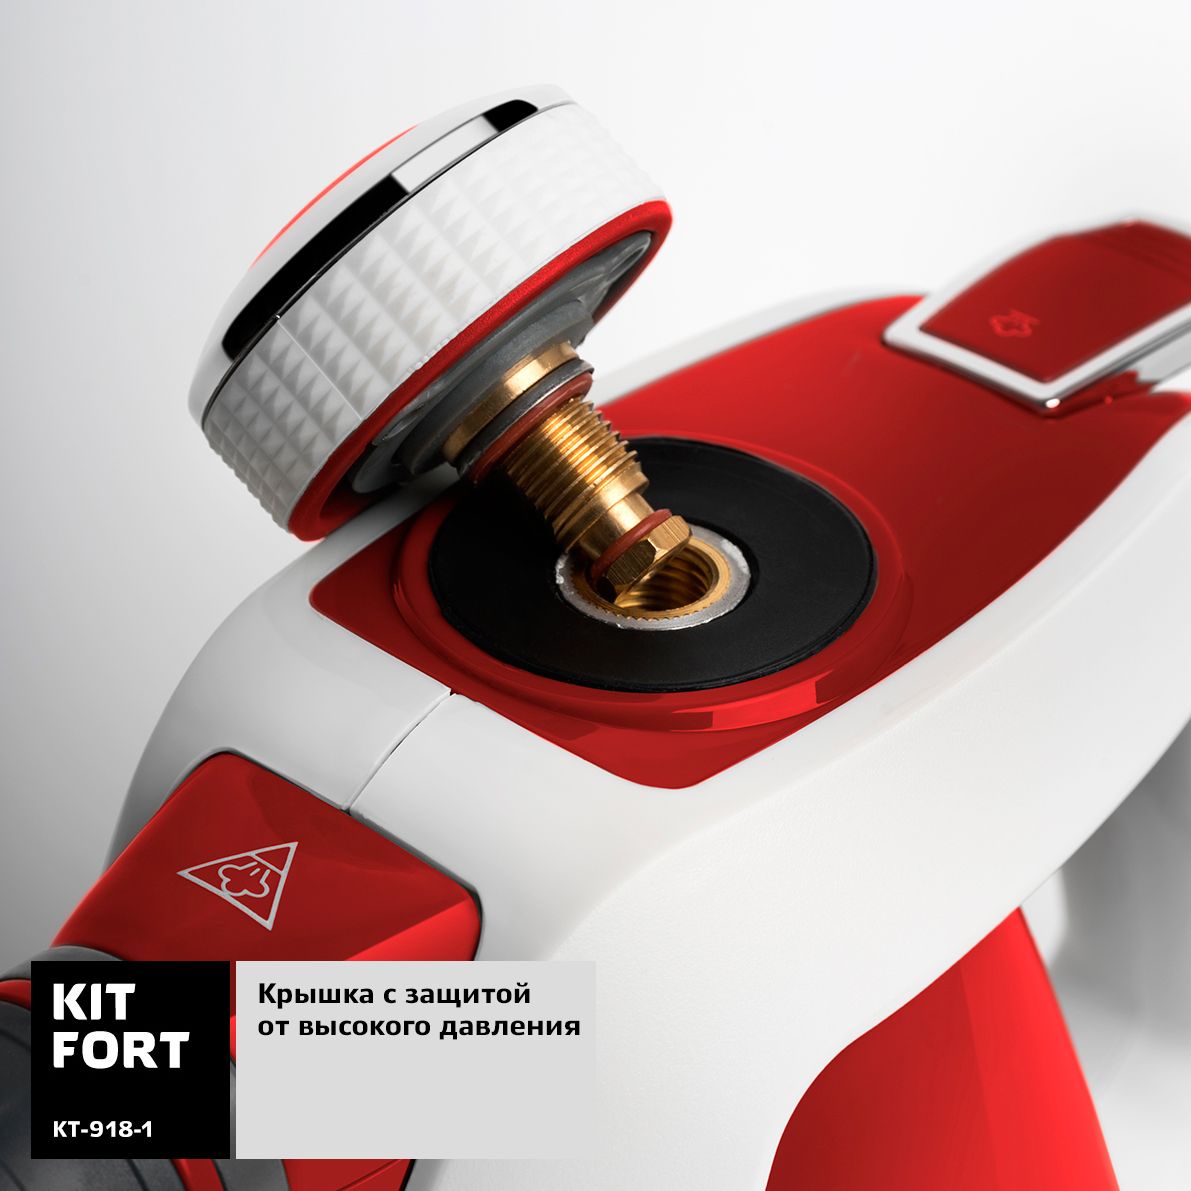  Kitfort KT-918-1, Red